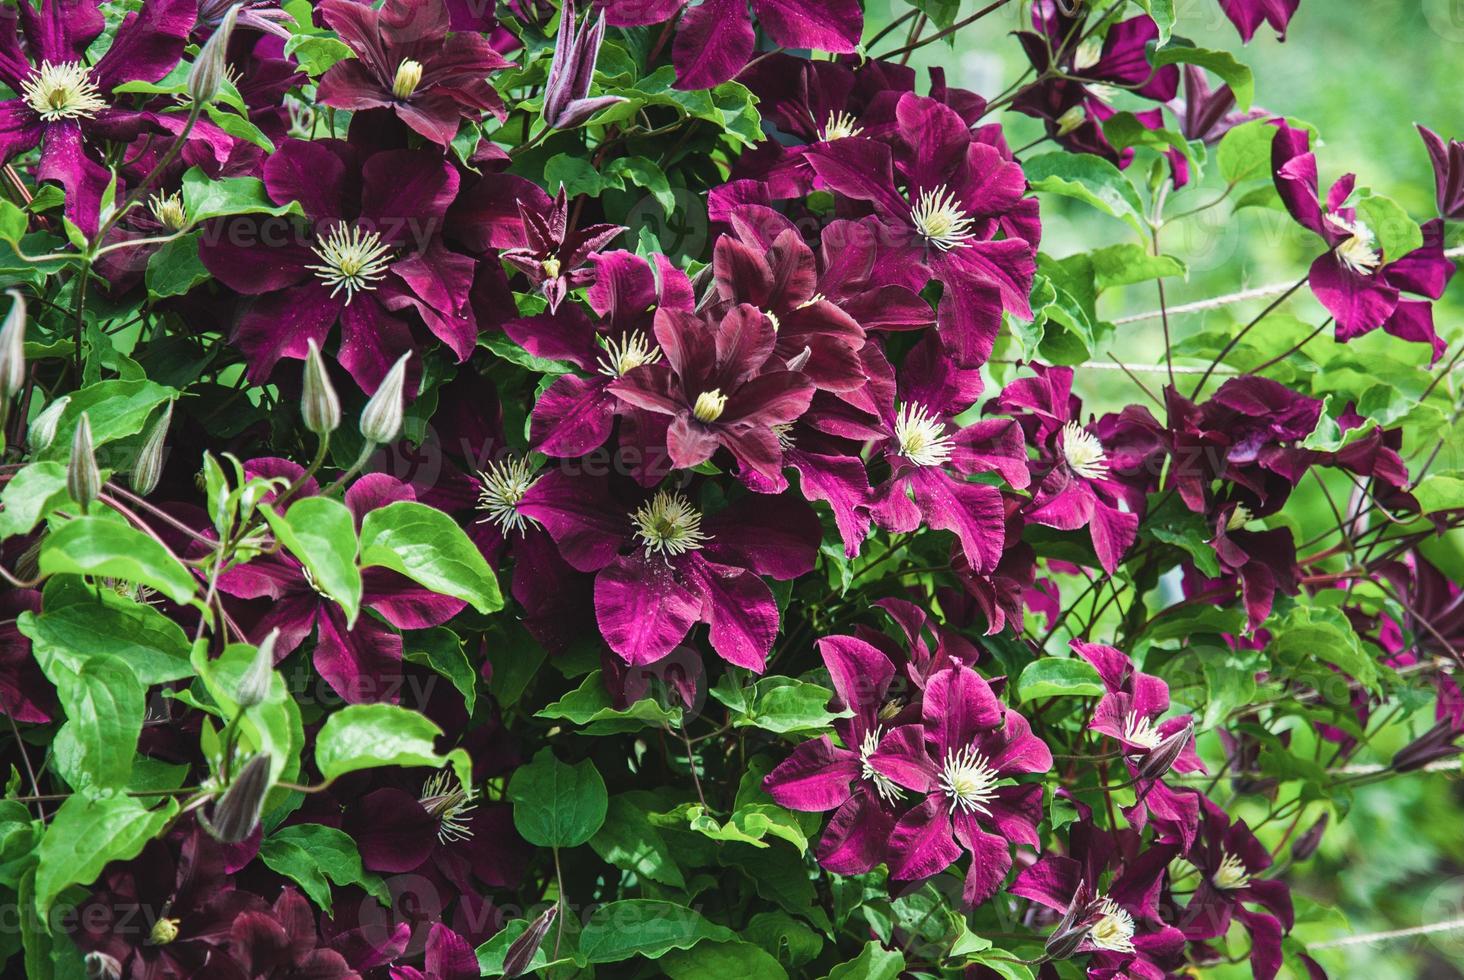 Clematis niobe dans le jardin, support de plantes grimpantes, fleurs mauves violettes en été photo